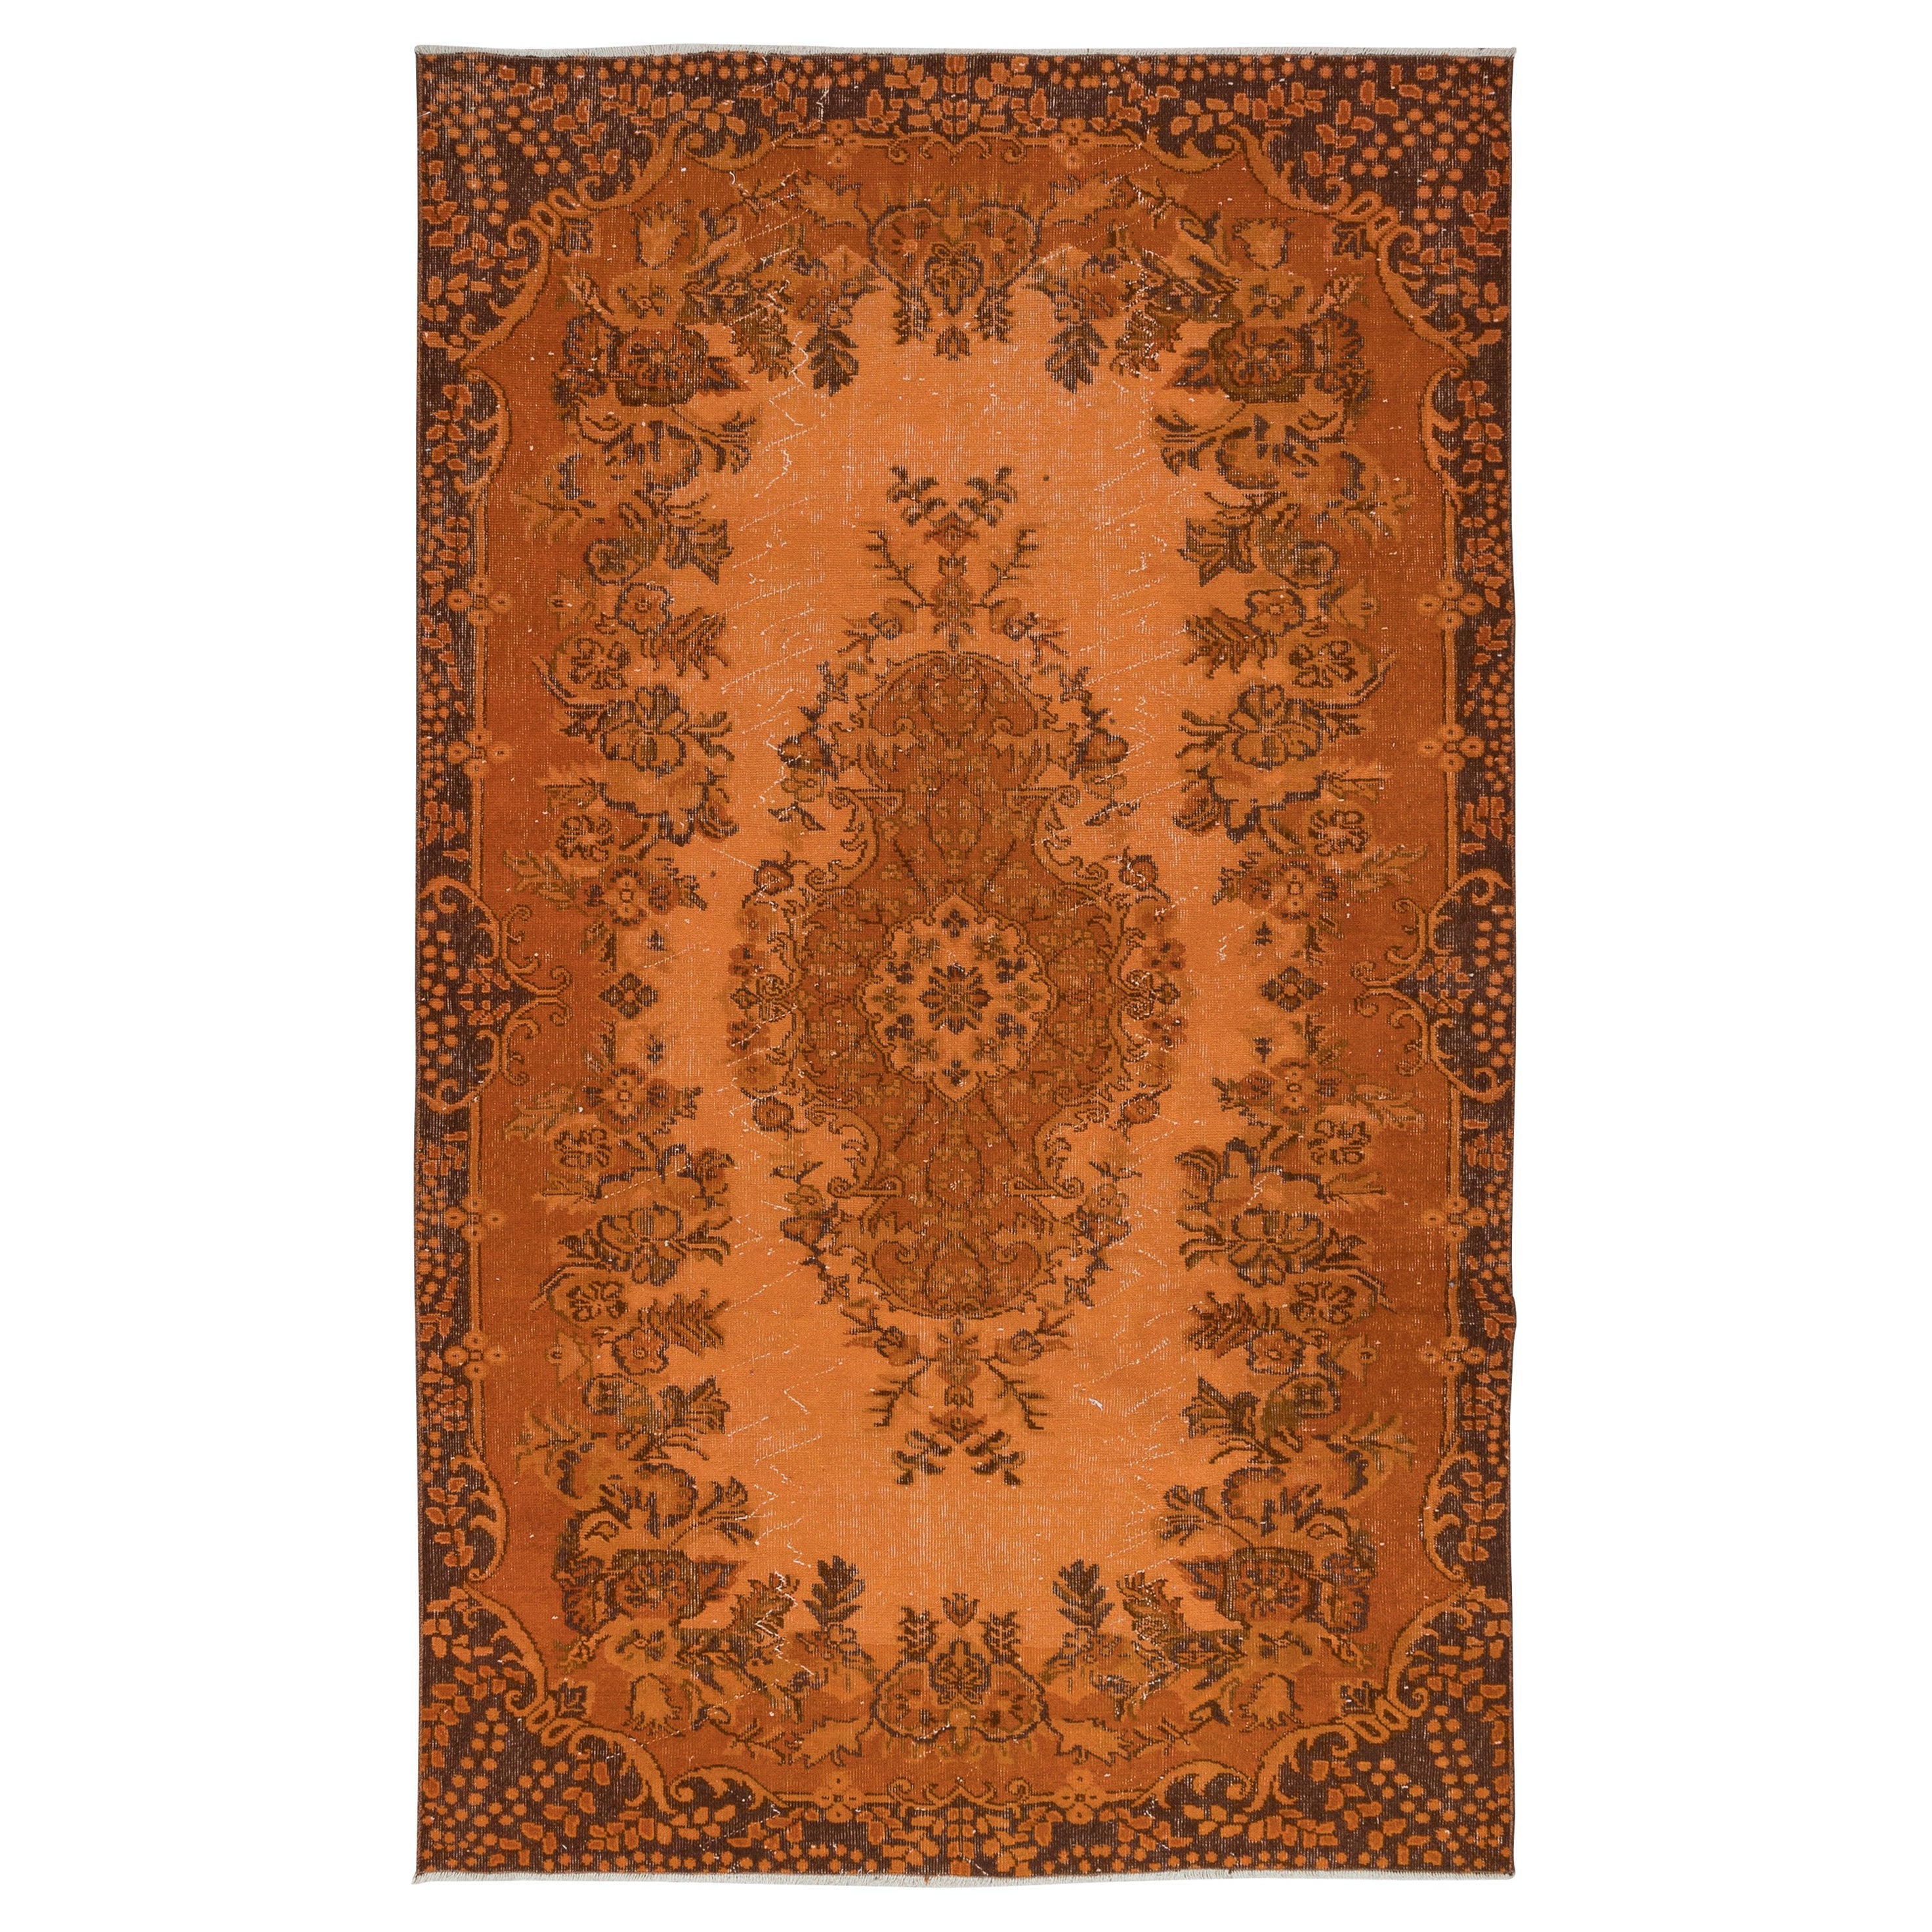 5.6x9.2 Ft Handgefertigter türkischer orangefarbener Teppich, moderner Teppich im Medaillon-Design im Angebot